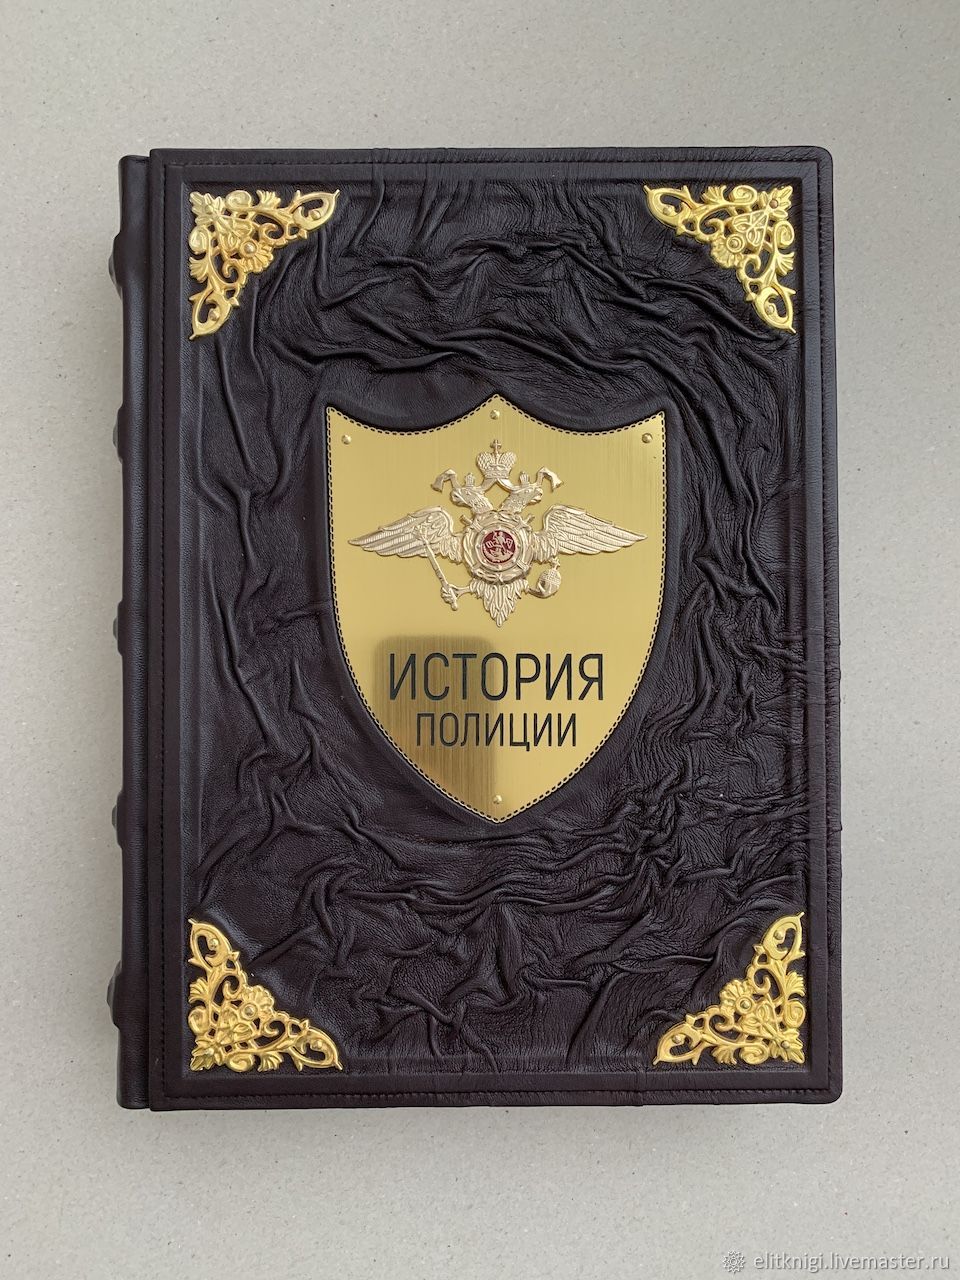 История полиции (кожаная подарочная книга), Подарочные книги, Москва,  Фото №1